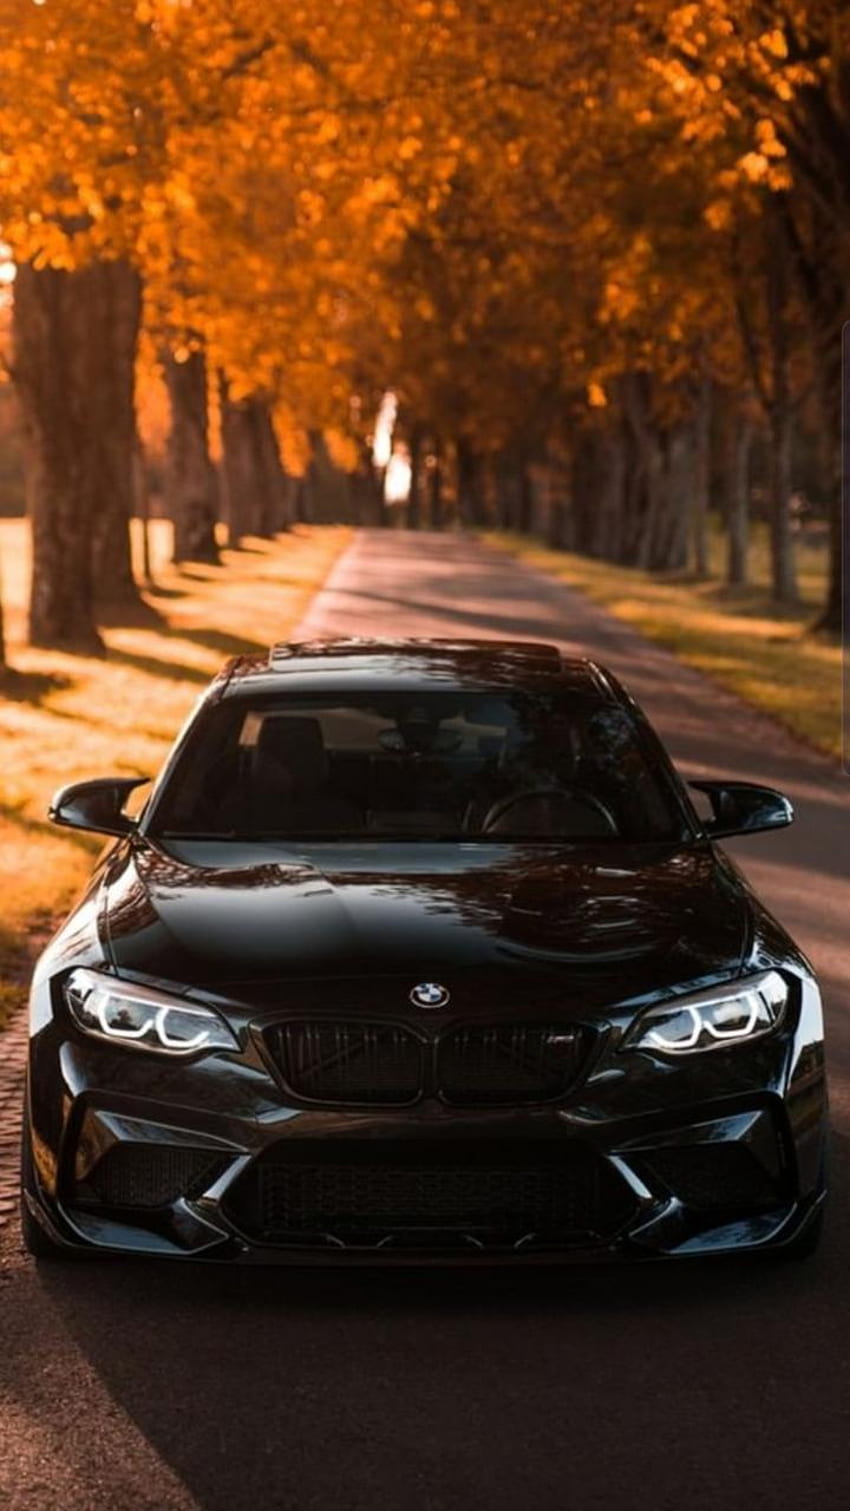 BMW, iluminação automotiva, outono, carro Papel de parede de celular HD